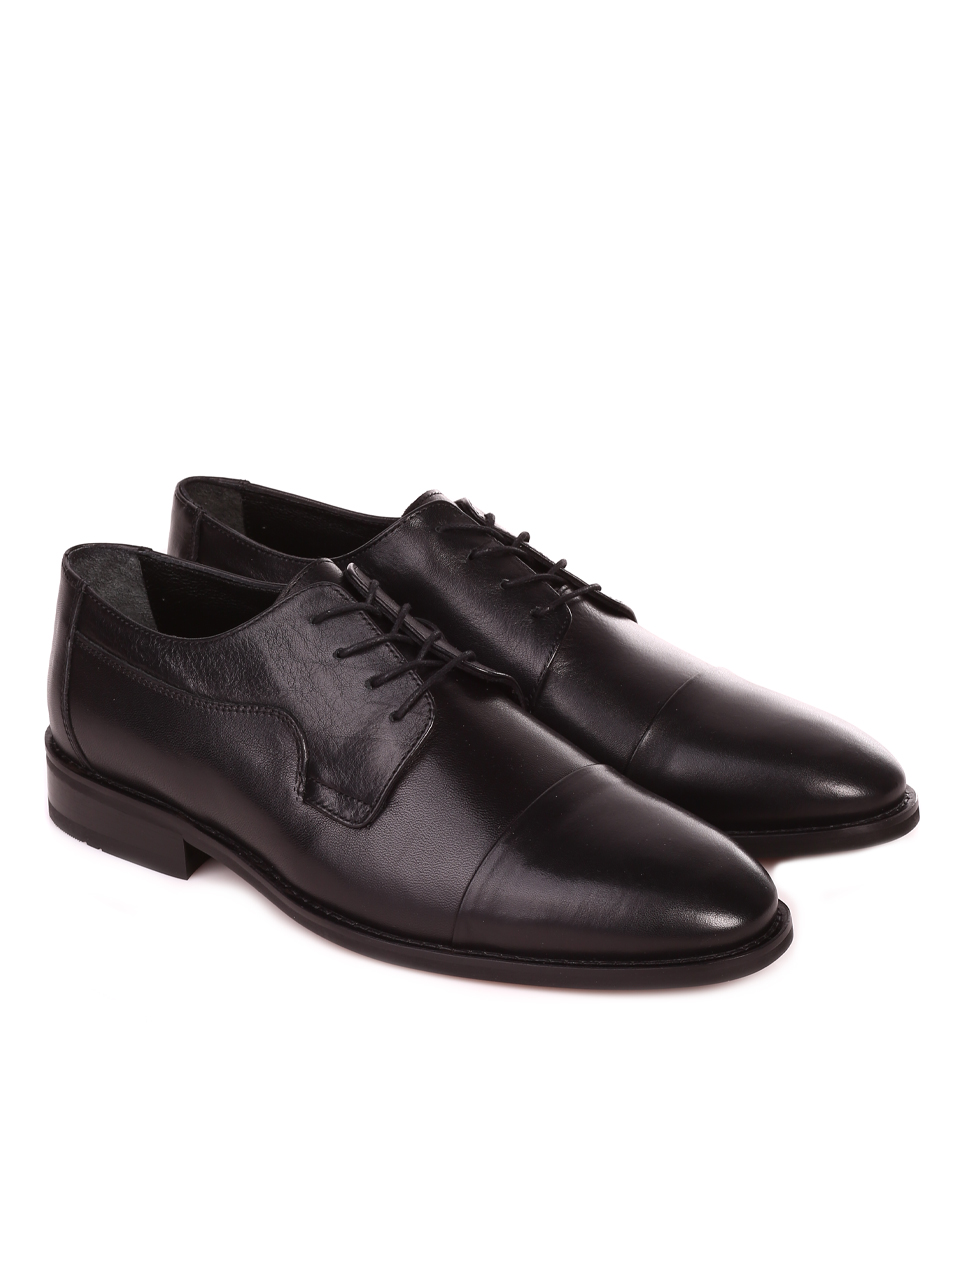 Елегантни мъжки обувки от естествена кожа 7AT-23312 black